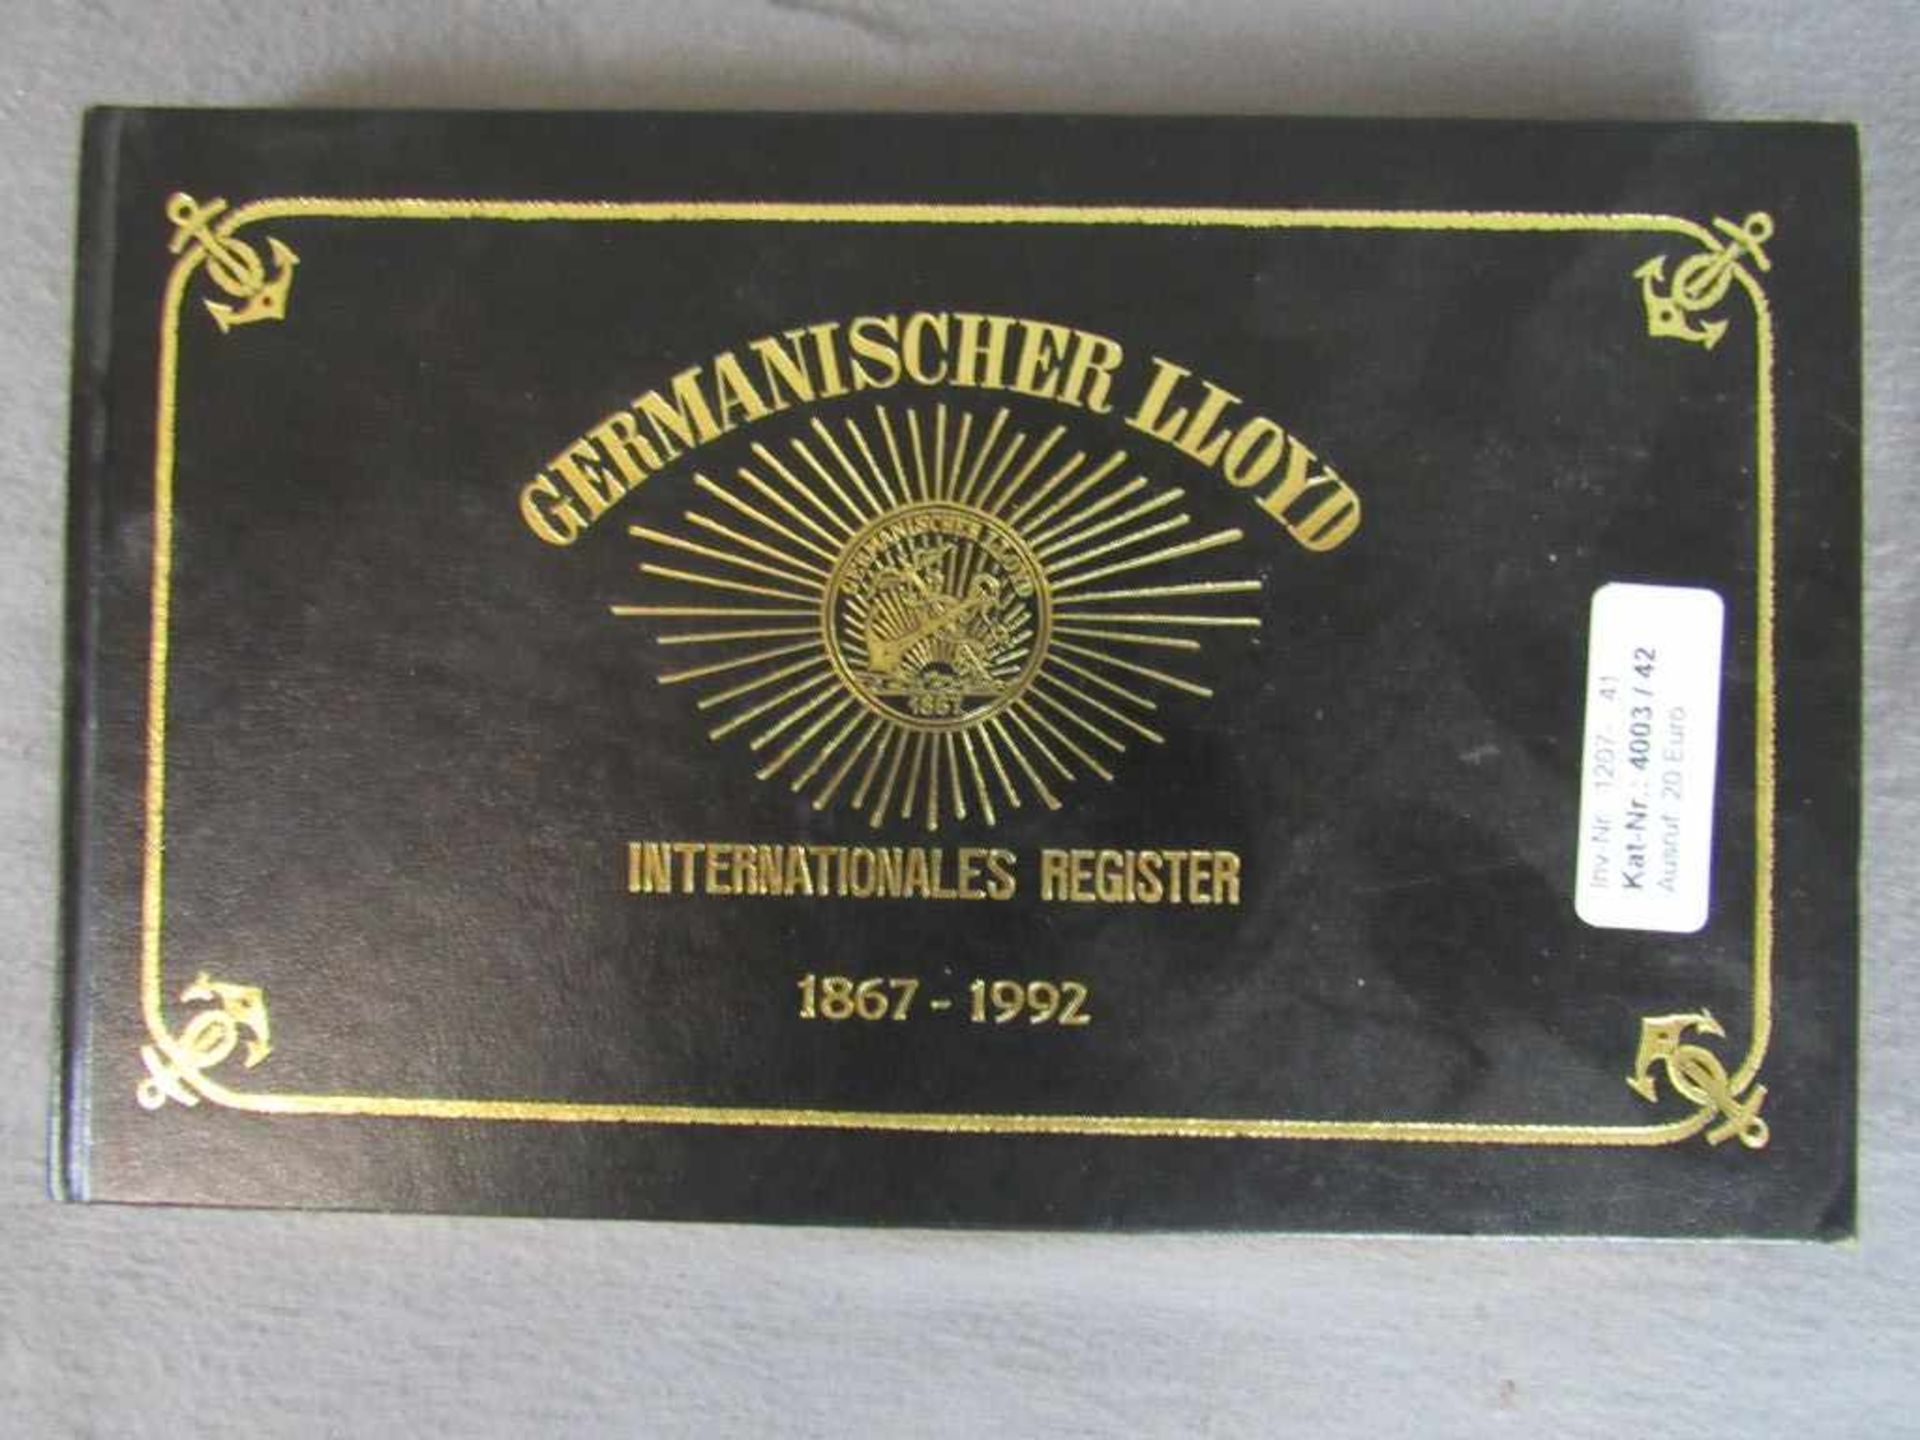 Buch Germanischer Lloyd Internationales Register von 1867-1992- - -20.00 % buyer's premium on the